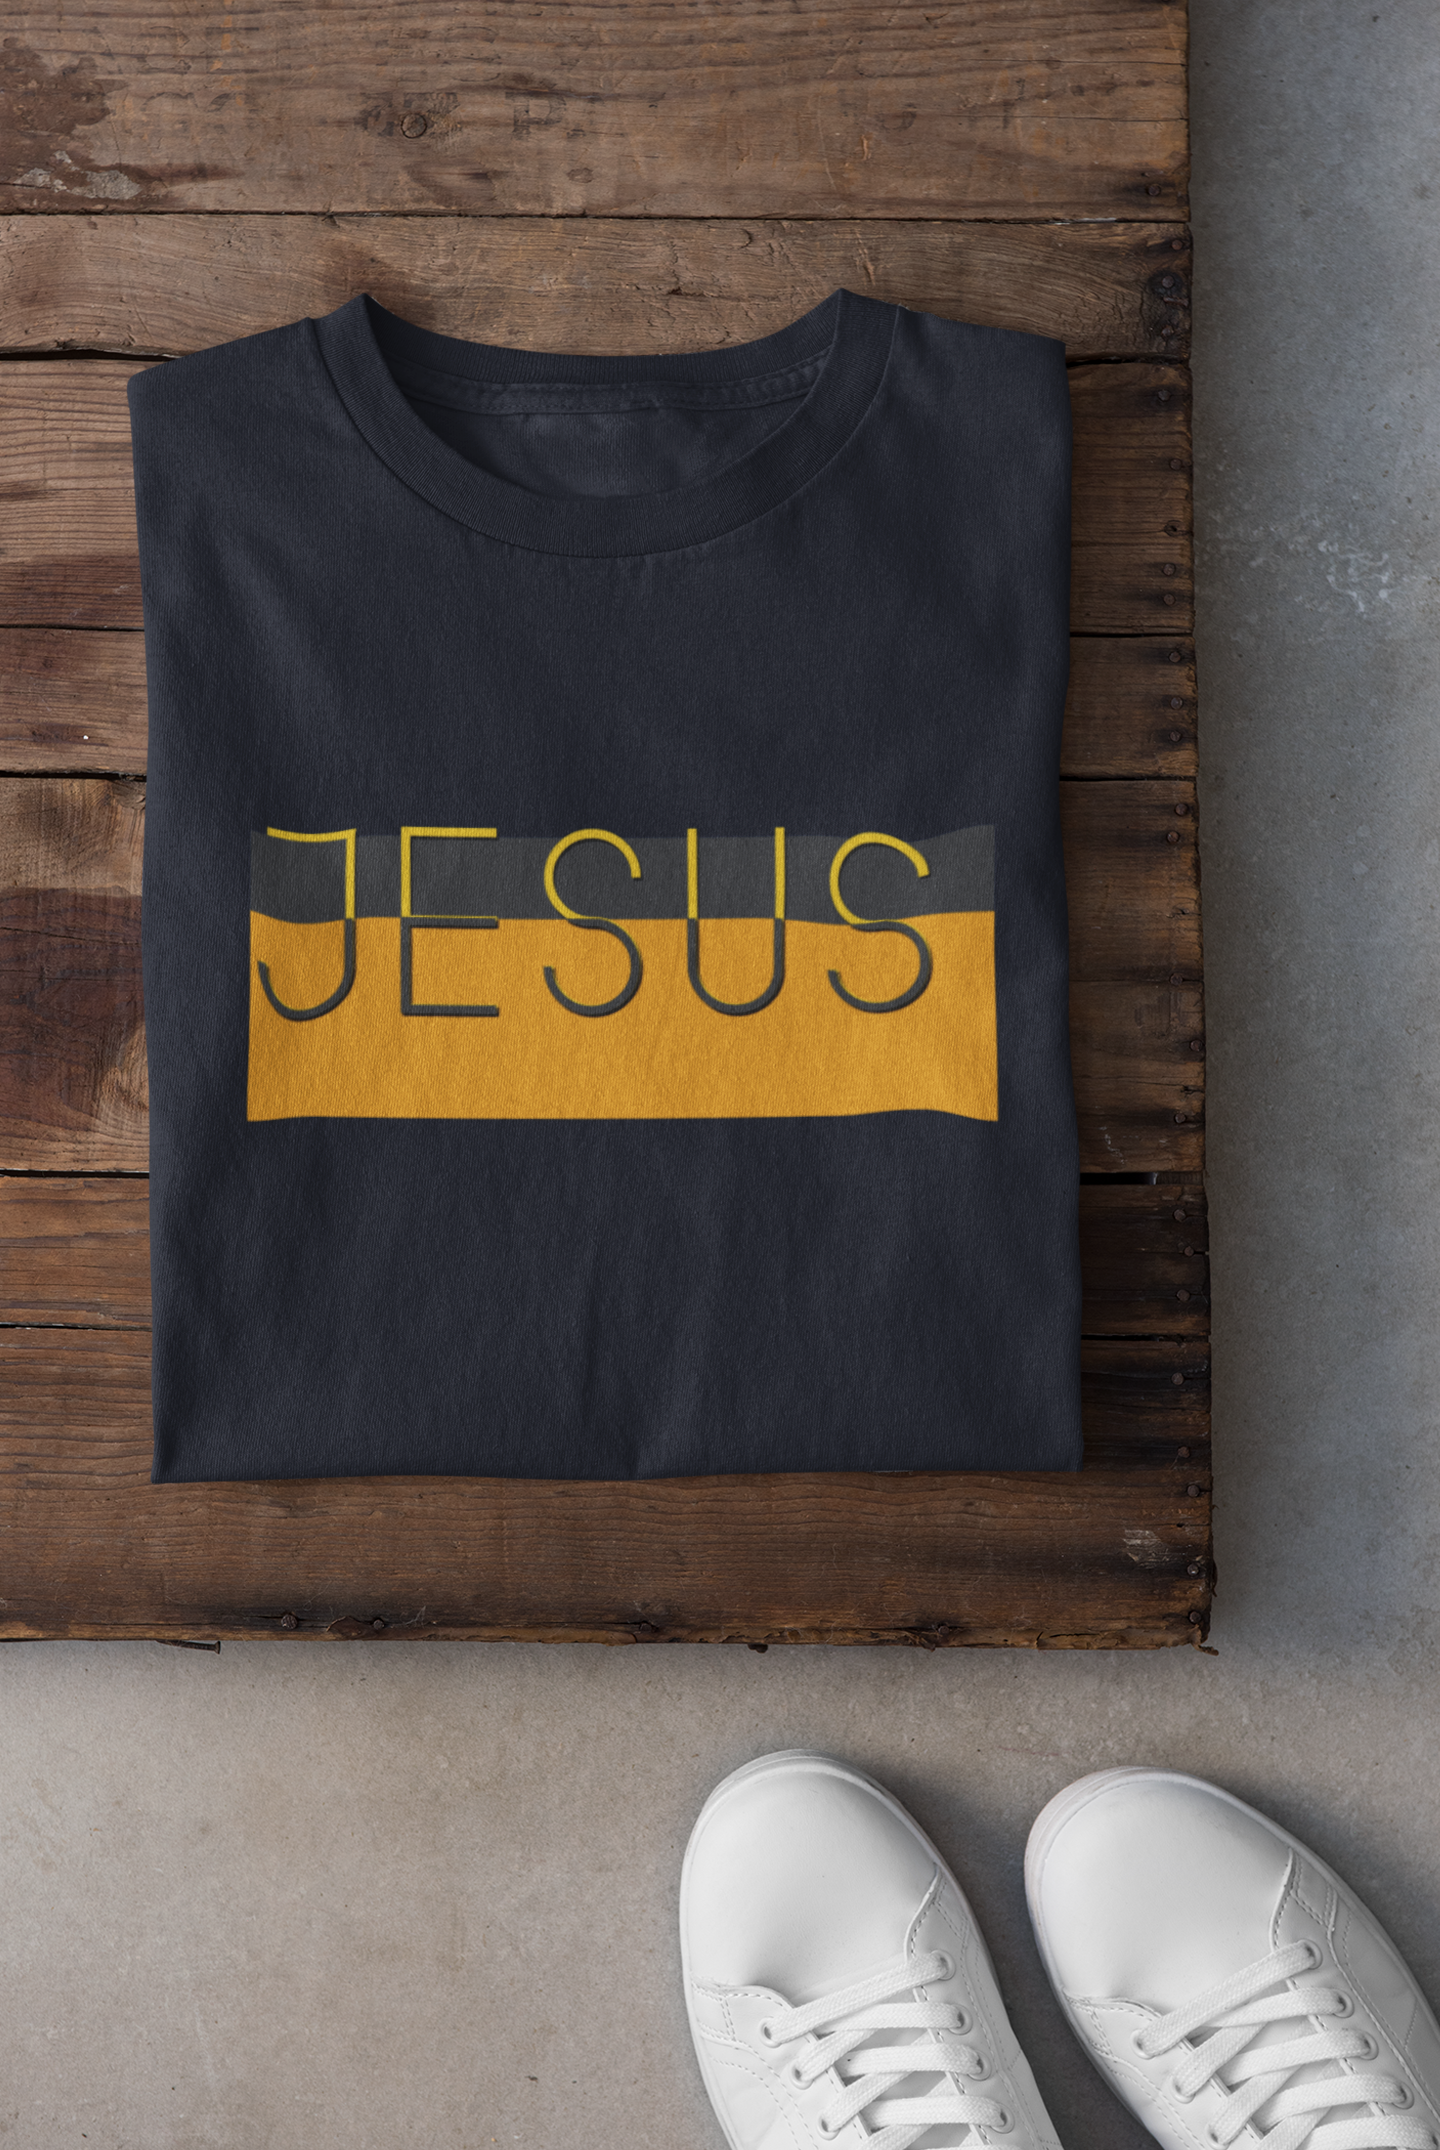 Jesus Women Half Sleeves T-shirt- FunkyTeesClub